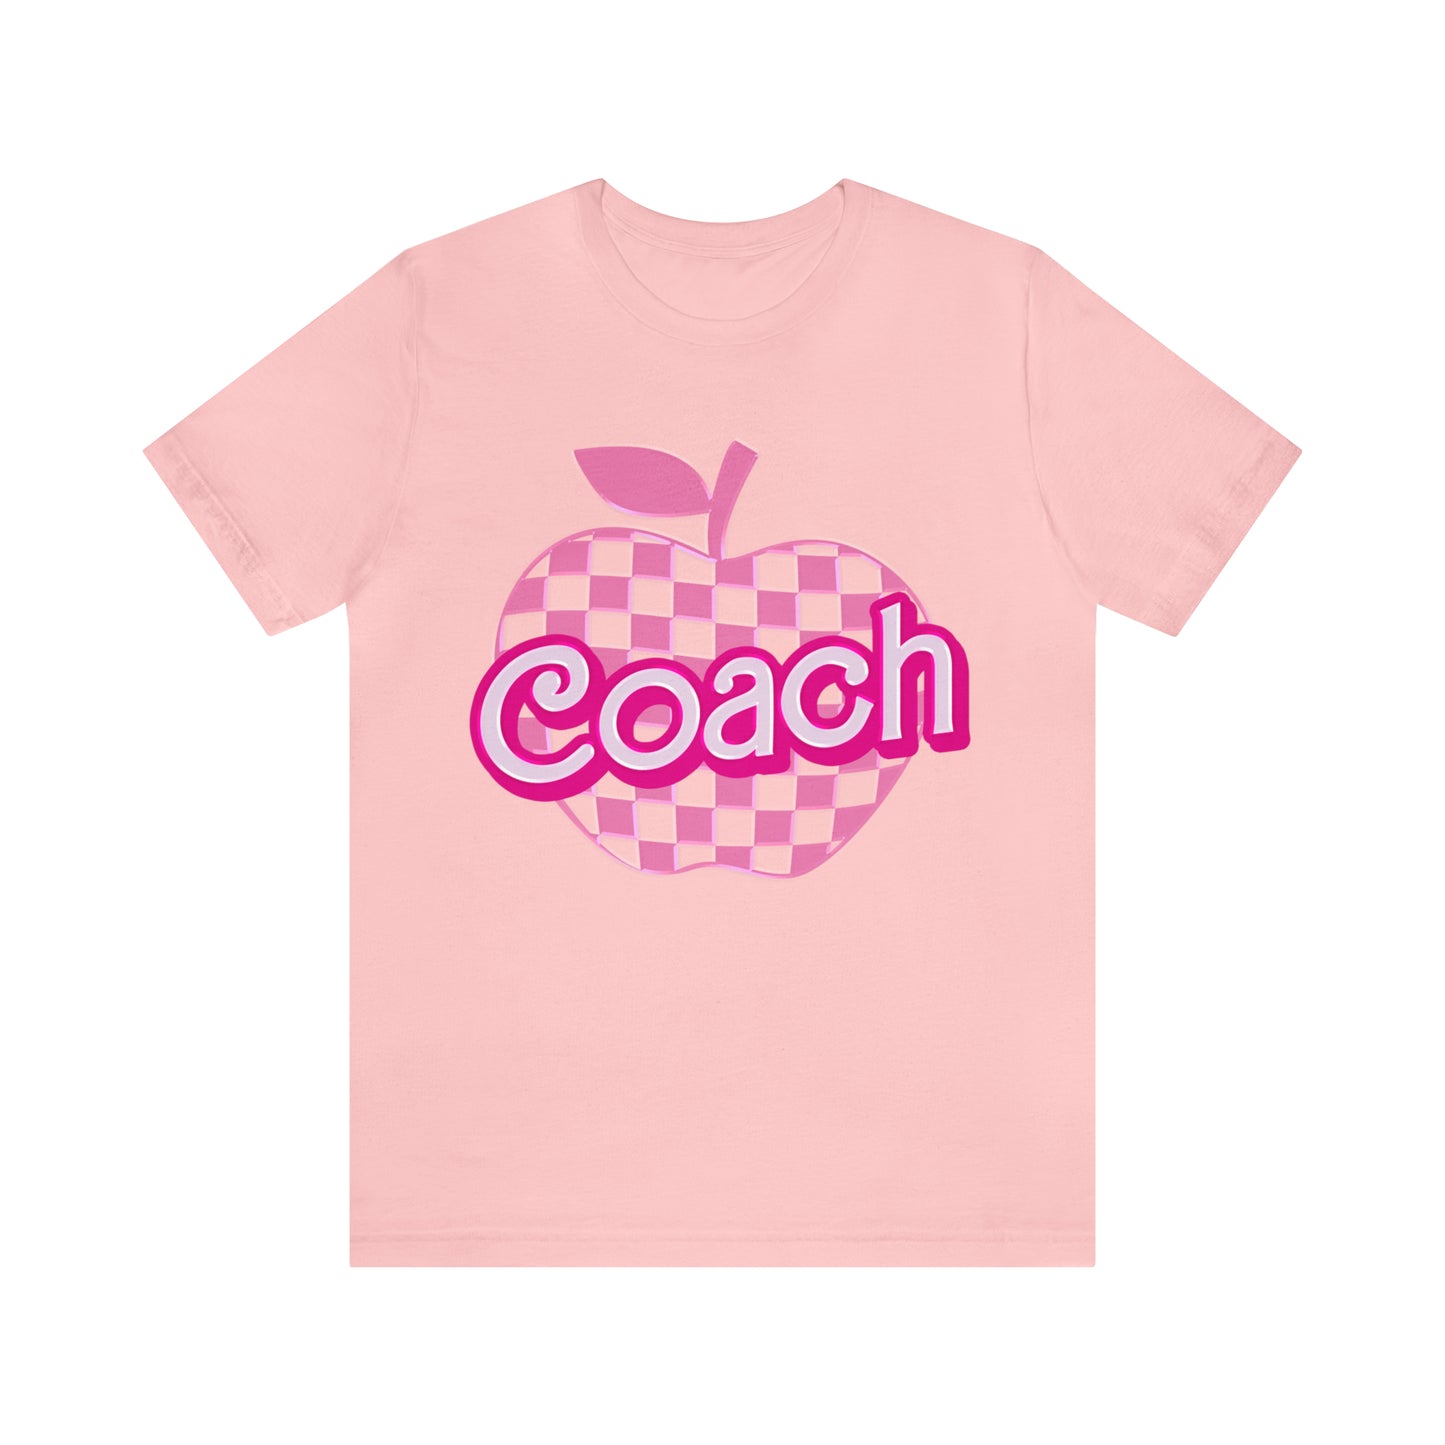 Coach shirt, Pink Sport Coach Shirt, Colorful Coaching shirt, 90s Cheer Coach shirt, Back To School Shirt, Teacher Gift, T815